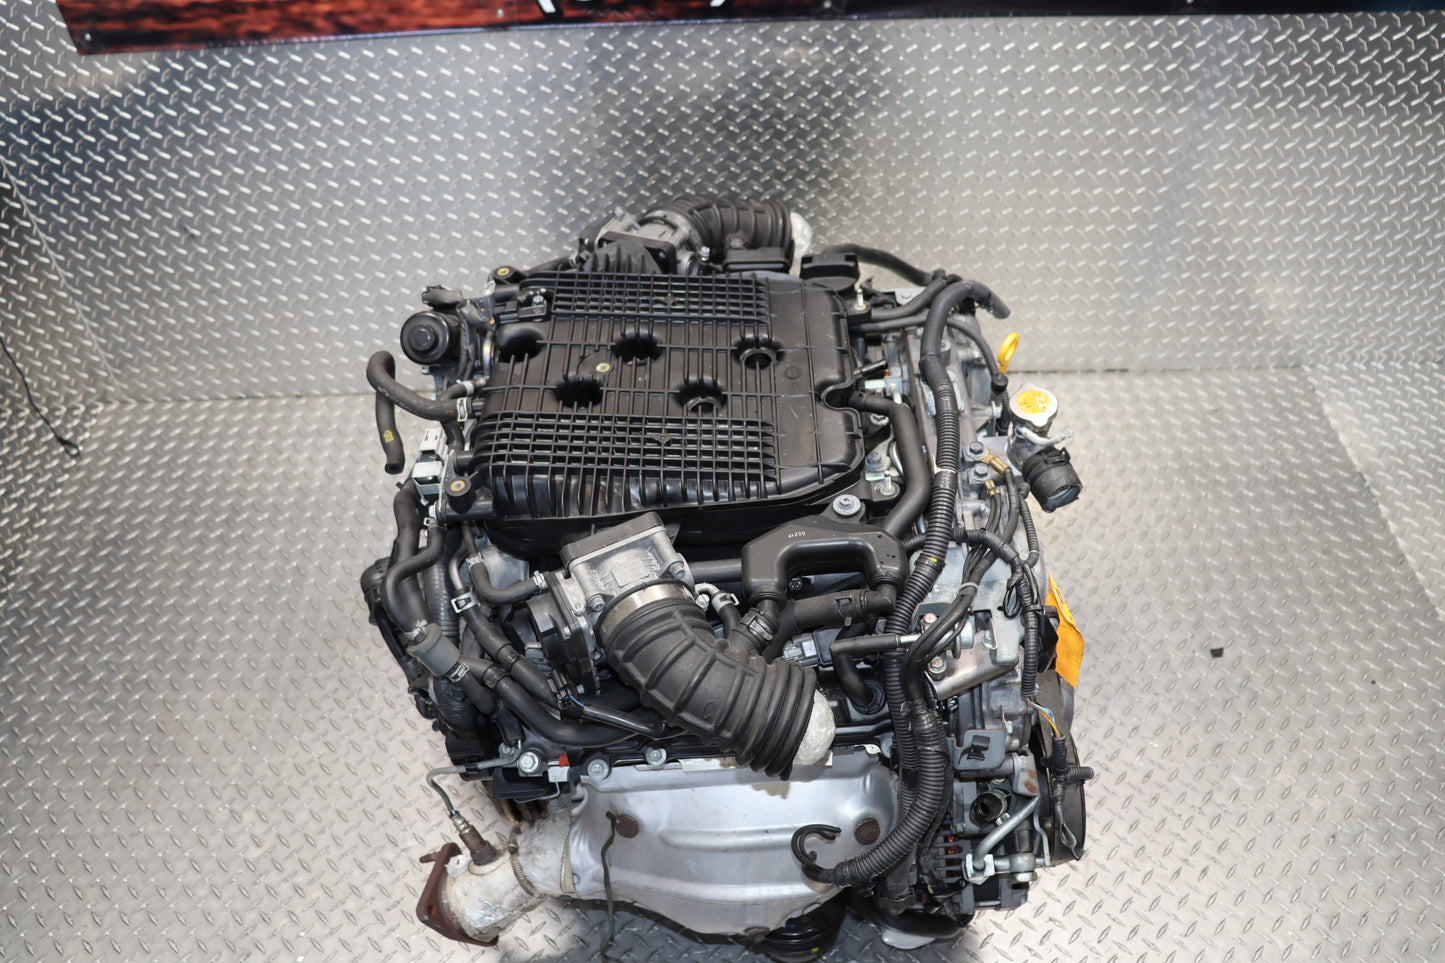 JDM VQ37VHR 2009 - 2015 NISSAN 370Z INFINITI G37 M37 Q40 Q50 3.7L V6 DOHC ENGINE